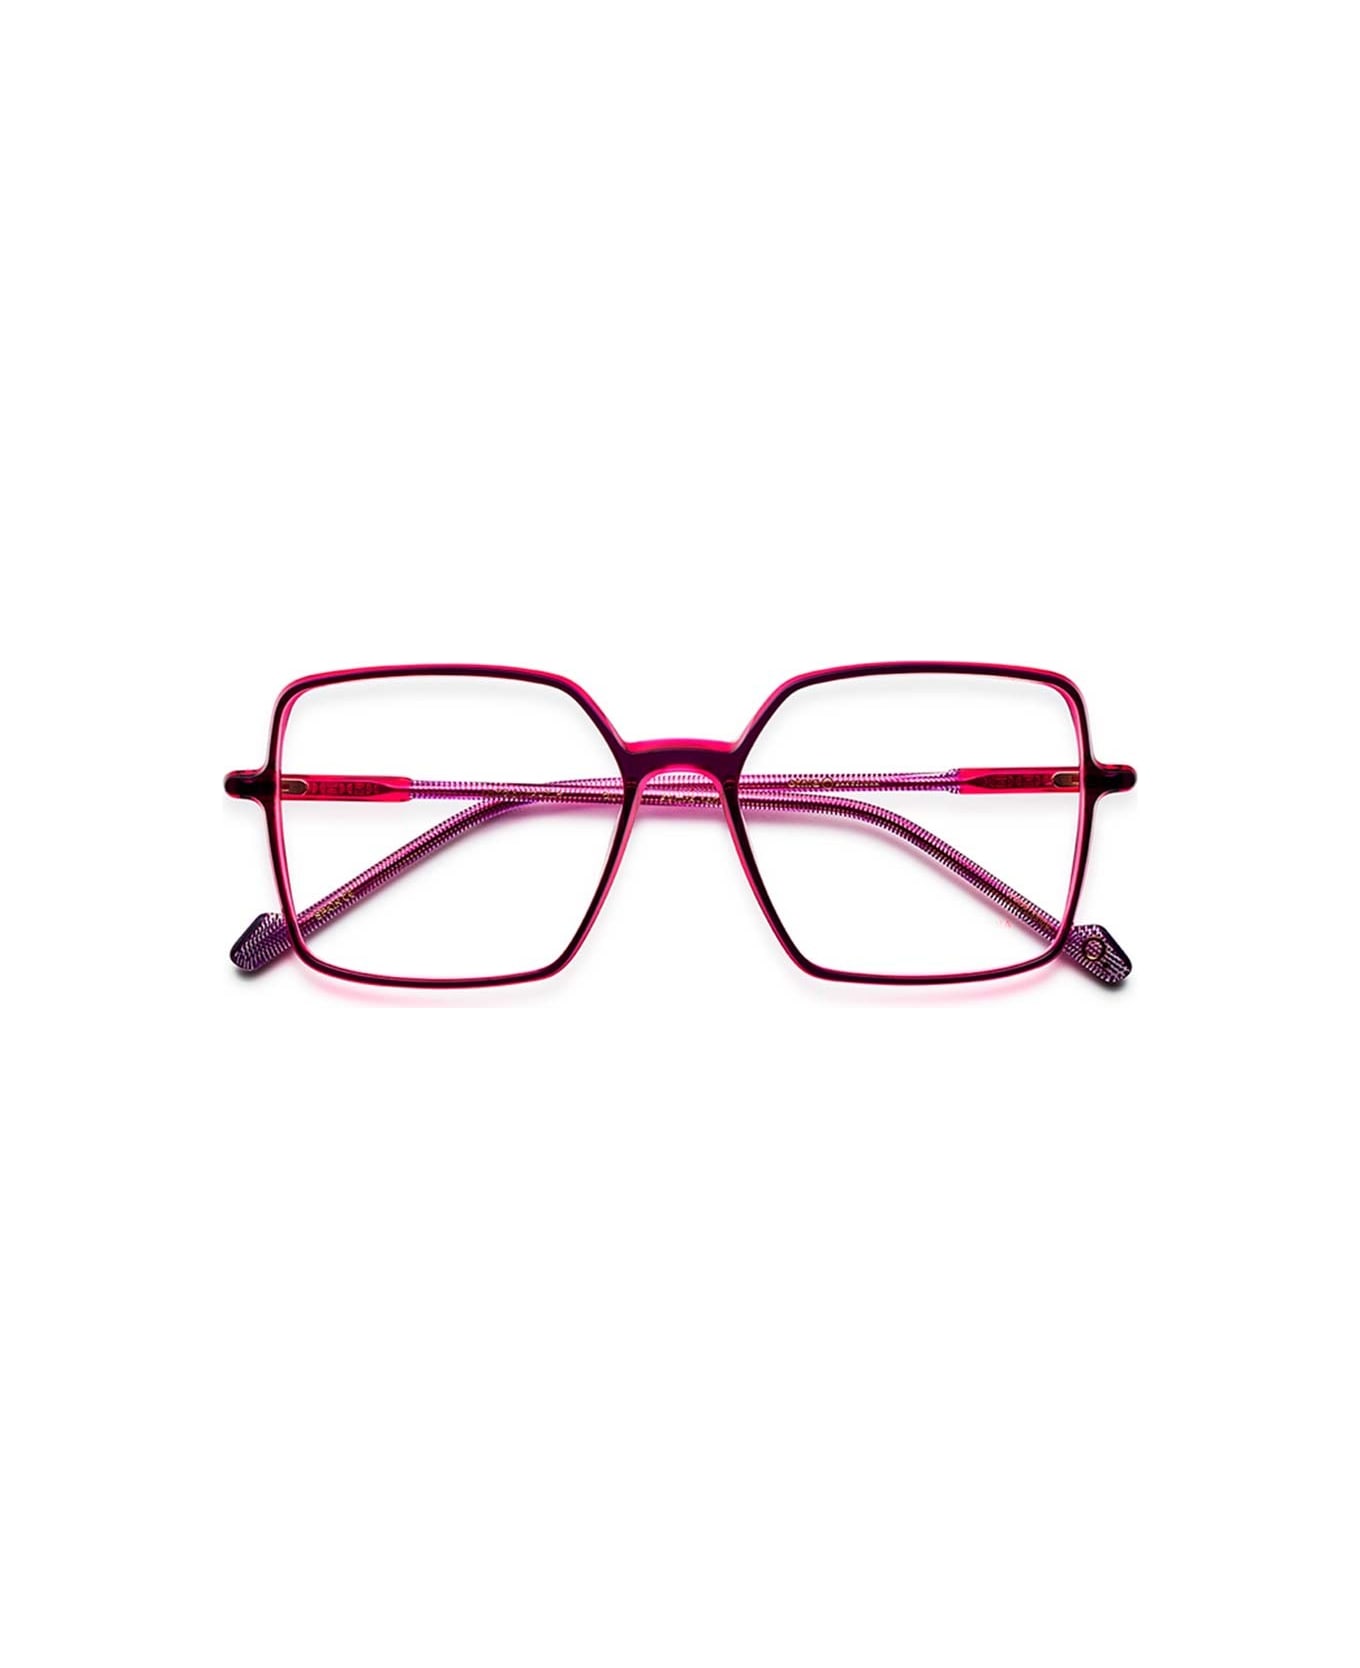 Etnia Barcelona Glasses - Fucsia